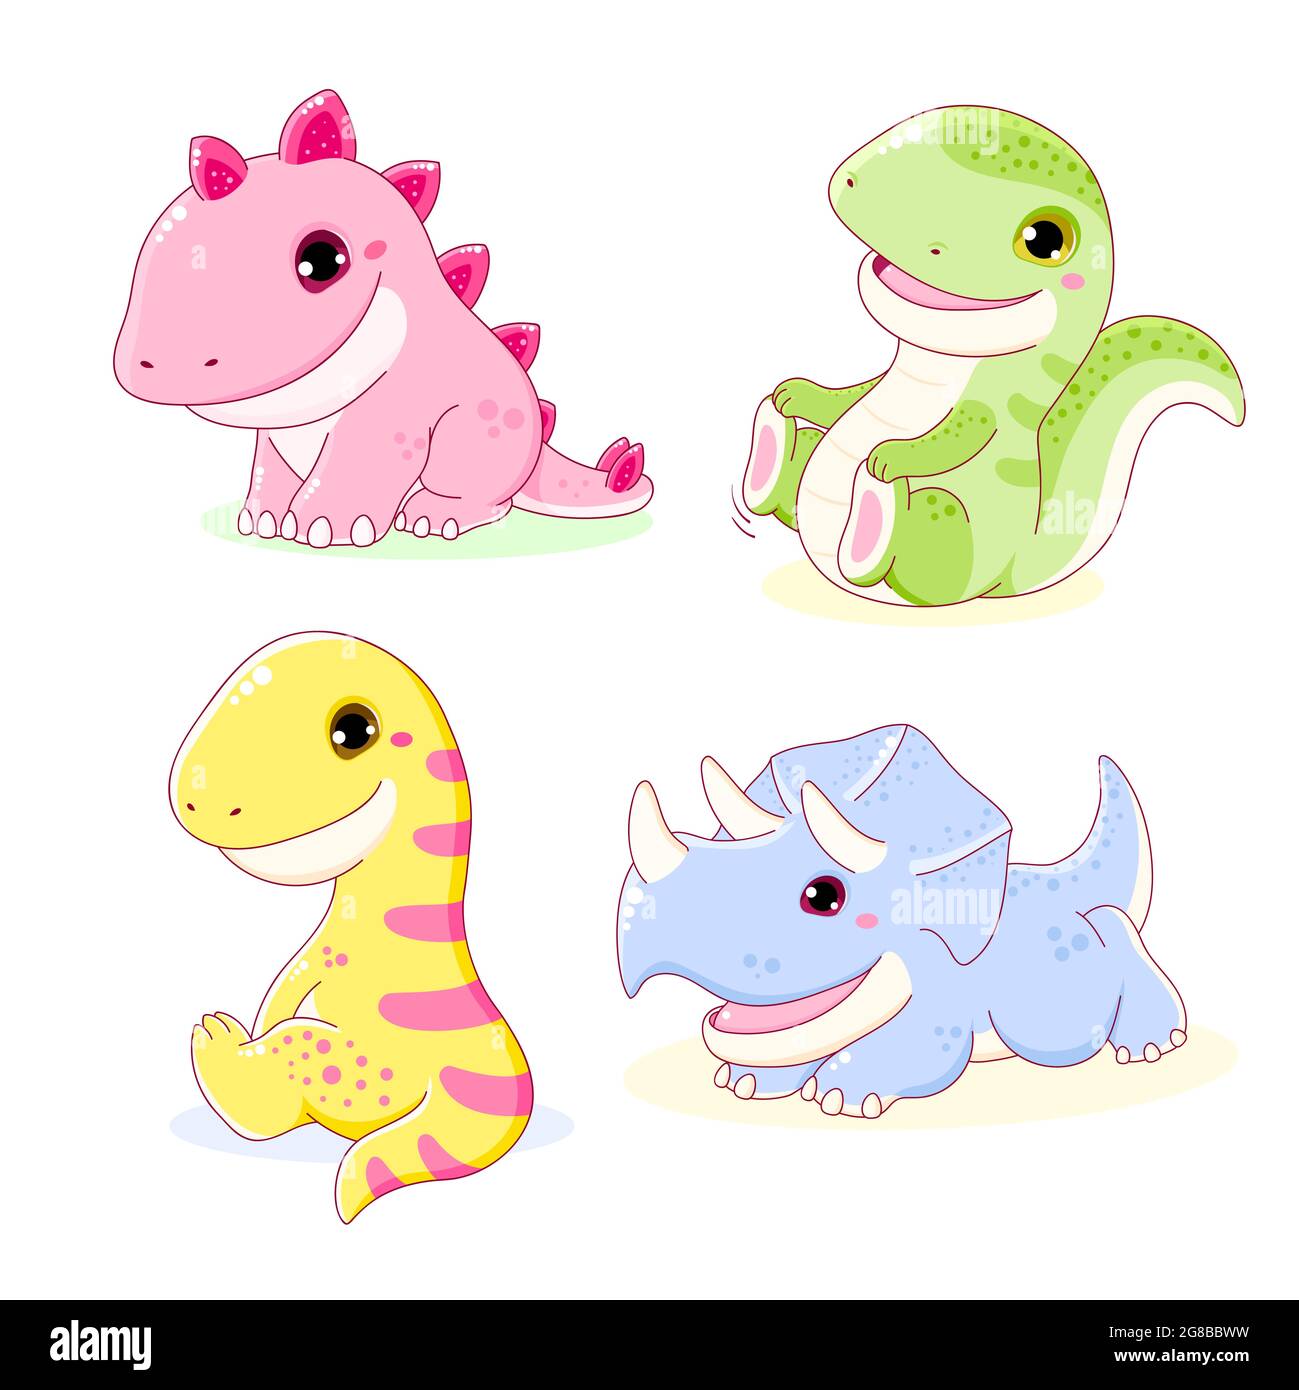 Ensemble de dinosaures mignons - stegosaurus, tyrannosaurus, diplodocus, triceratops. Collection de personnages kawaii. Illustration vectorielle EPS8 Illustration de Vecteur